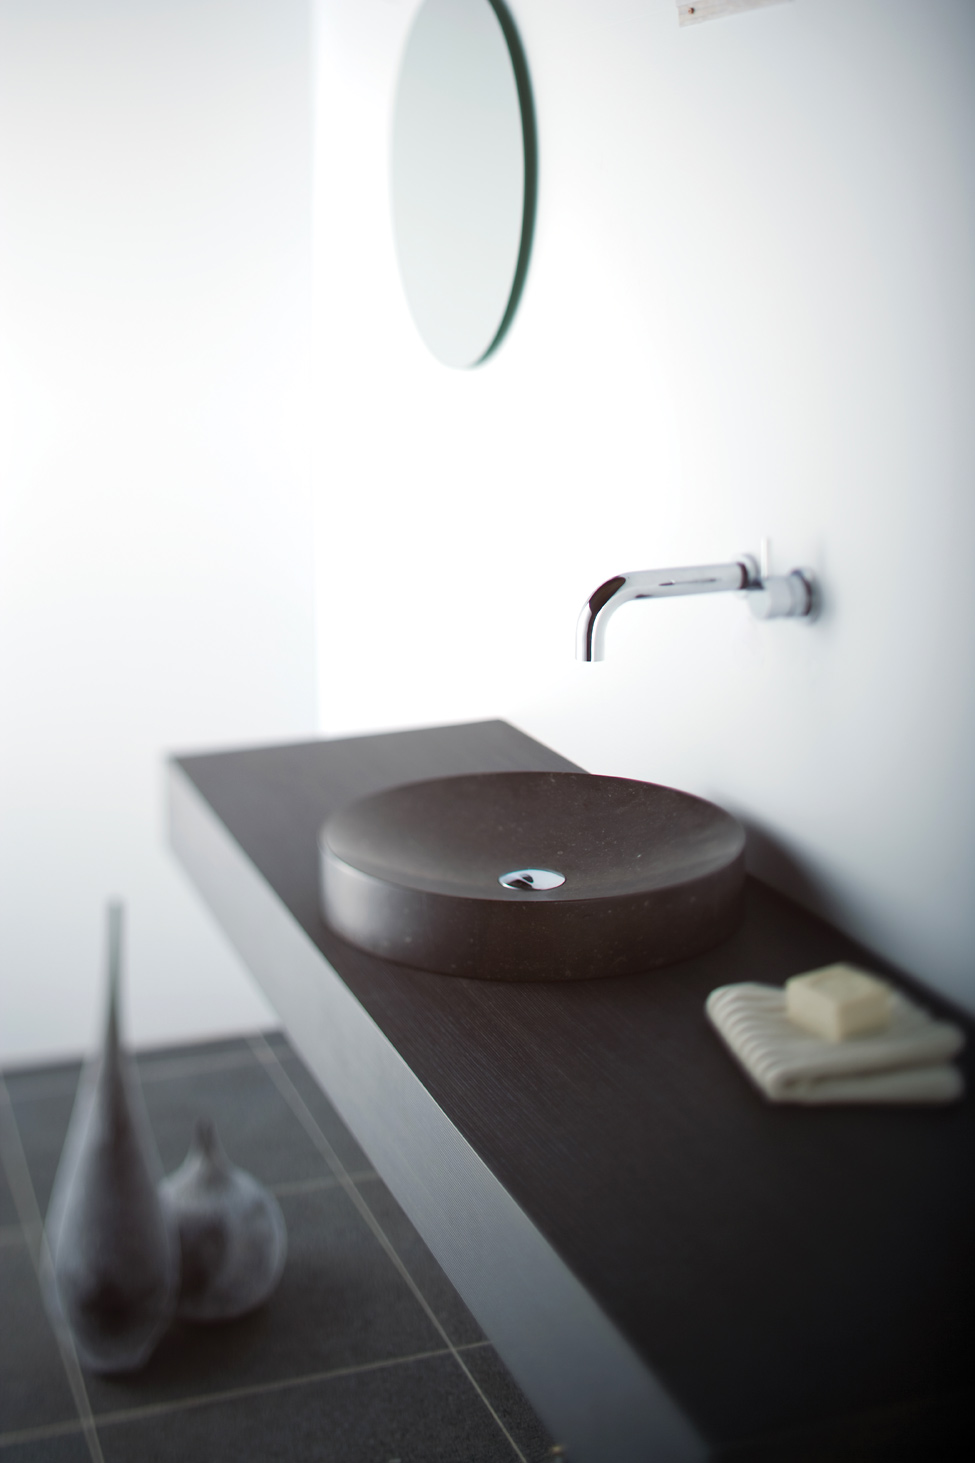 Необычная коллекция аксессуаров для ванной от компании omvivo – яркая индивидуальность вашего интерьера